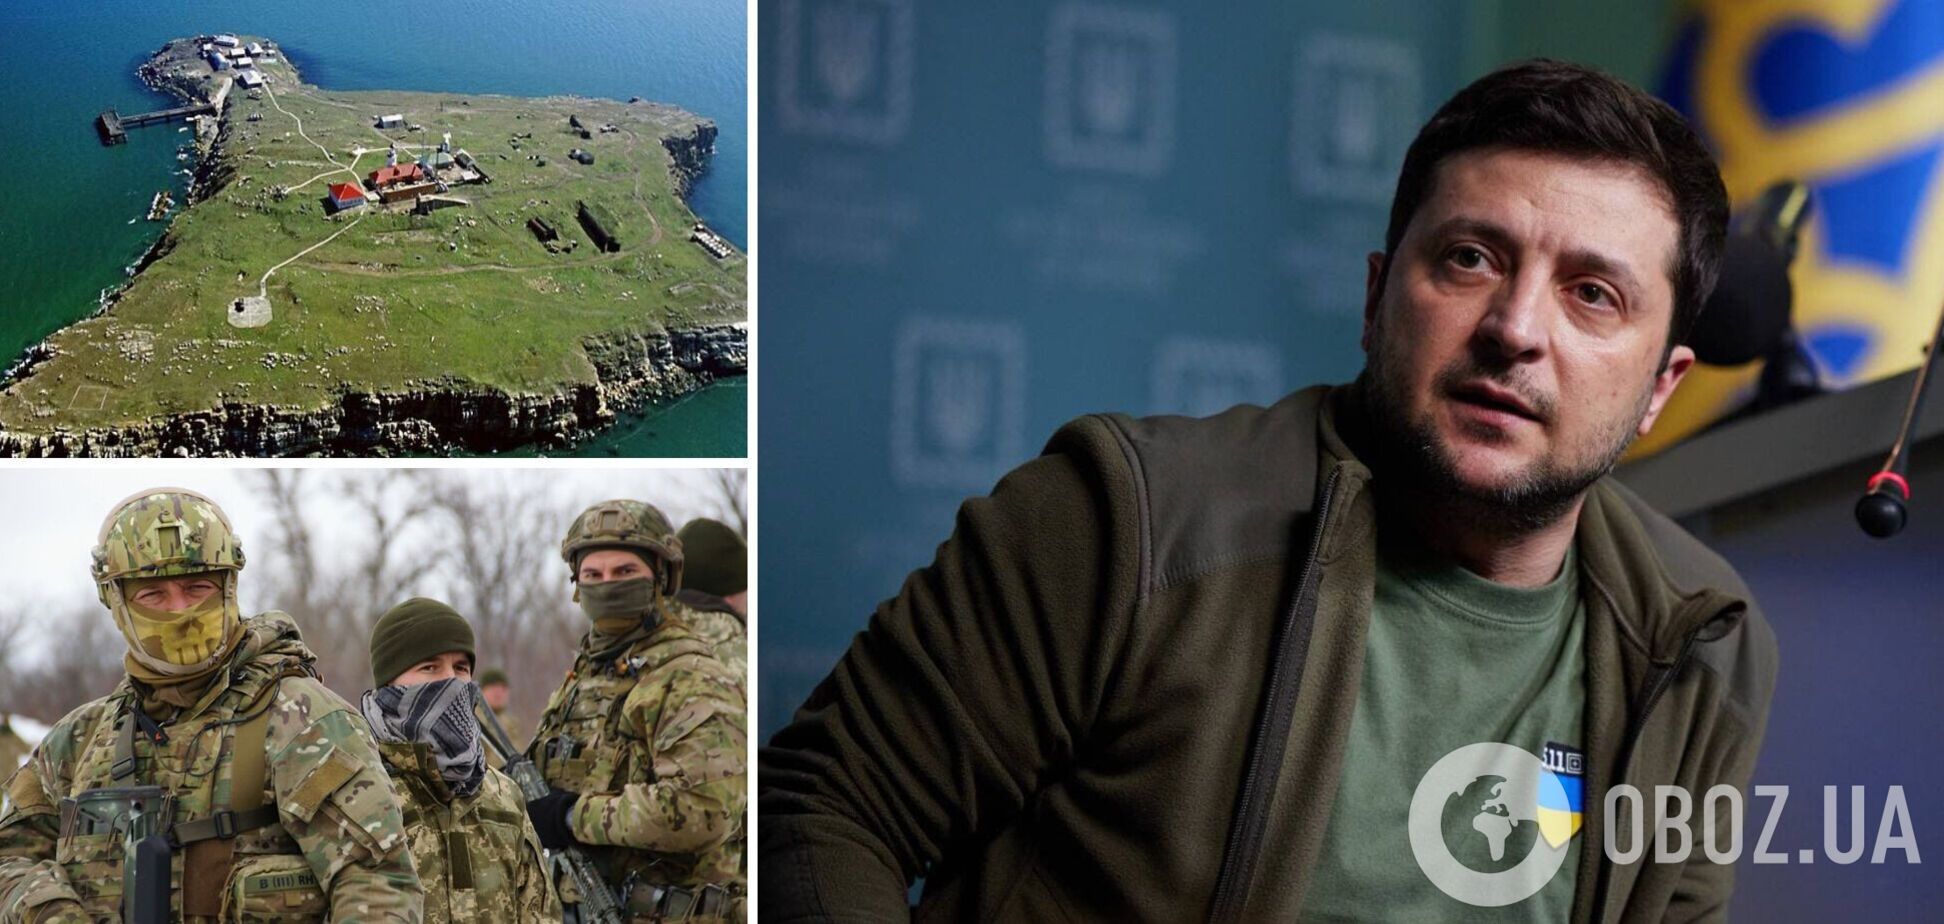 Зеленский о судьбе украинских пограничников с острова Змеиный: часть погибла, часть была взята в плен